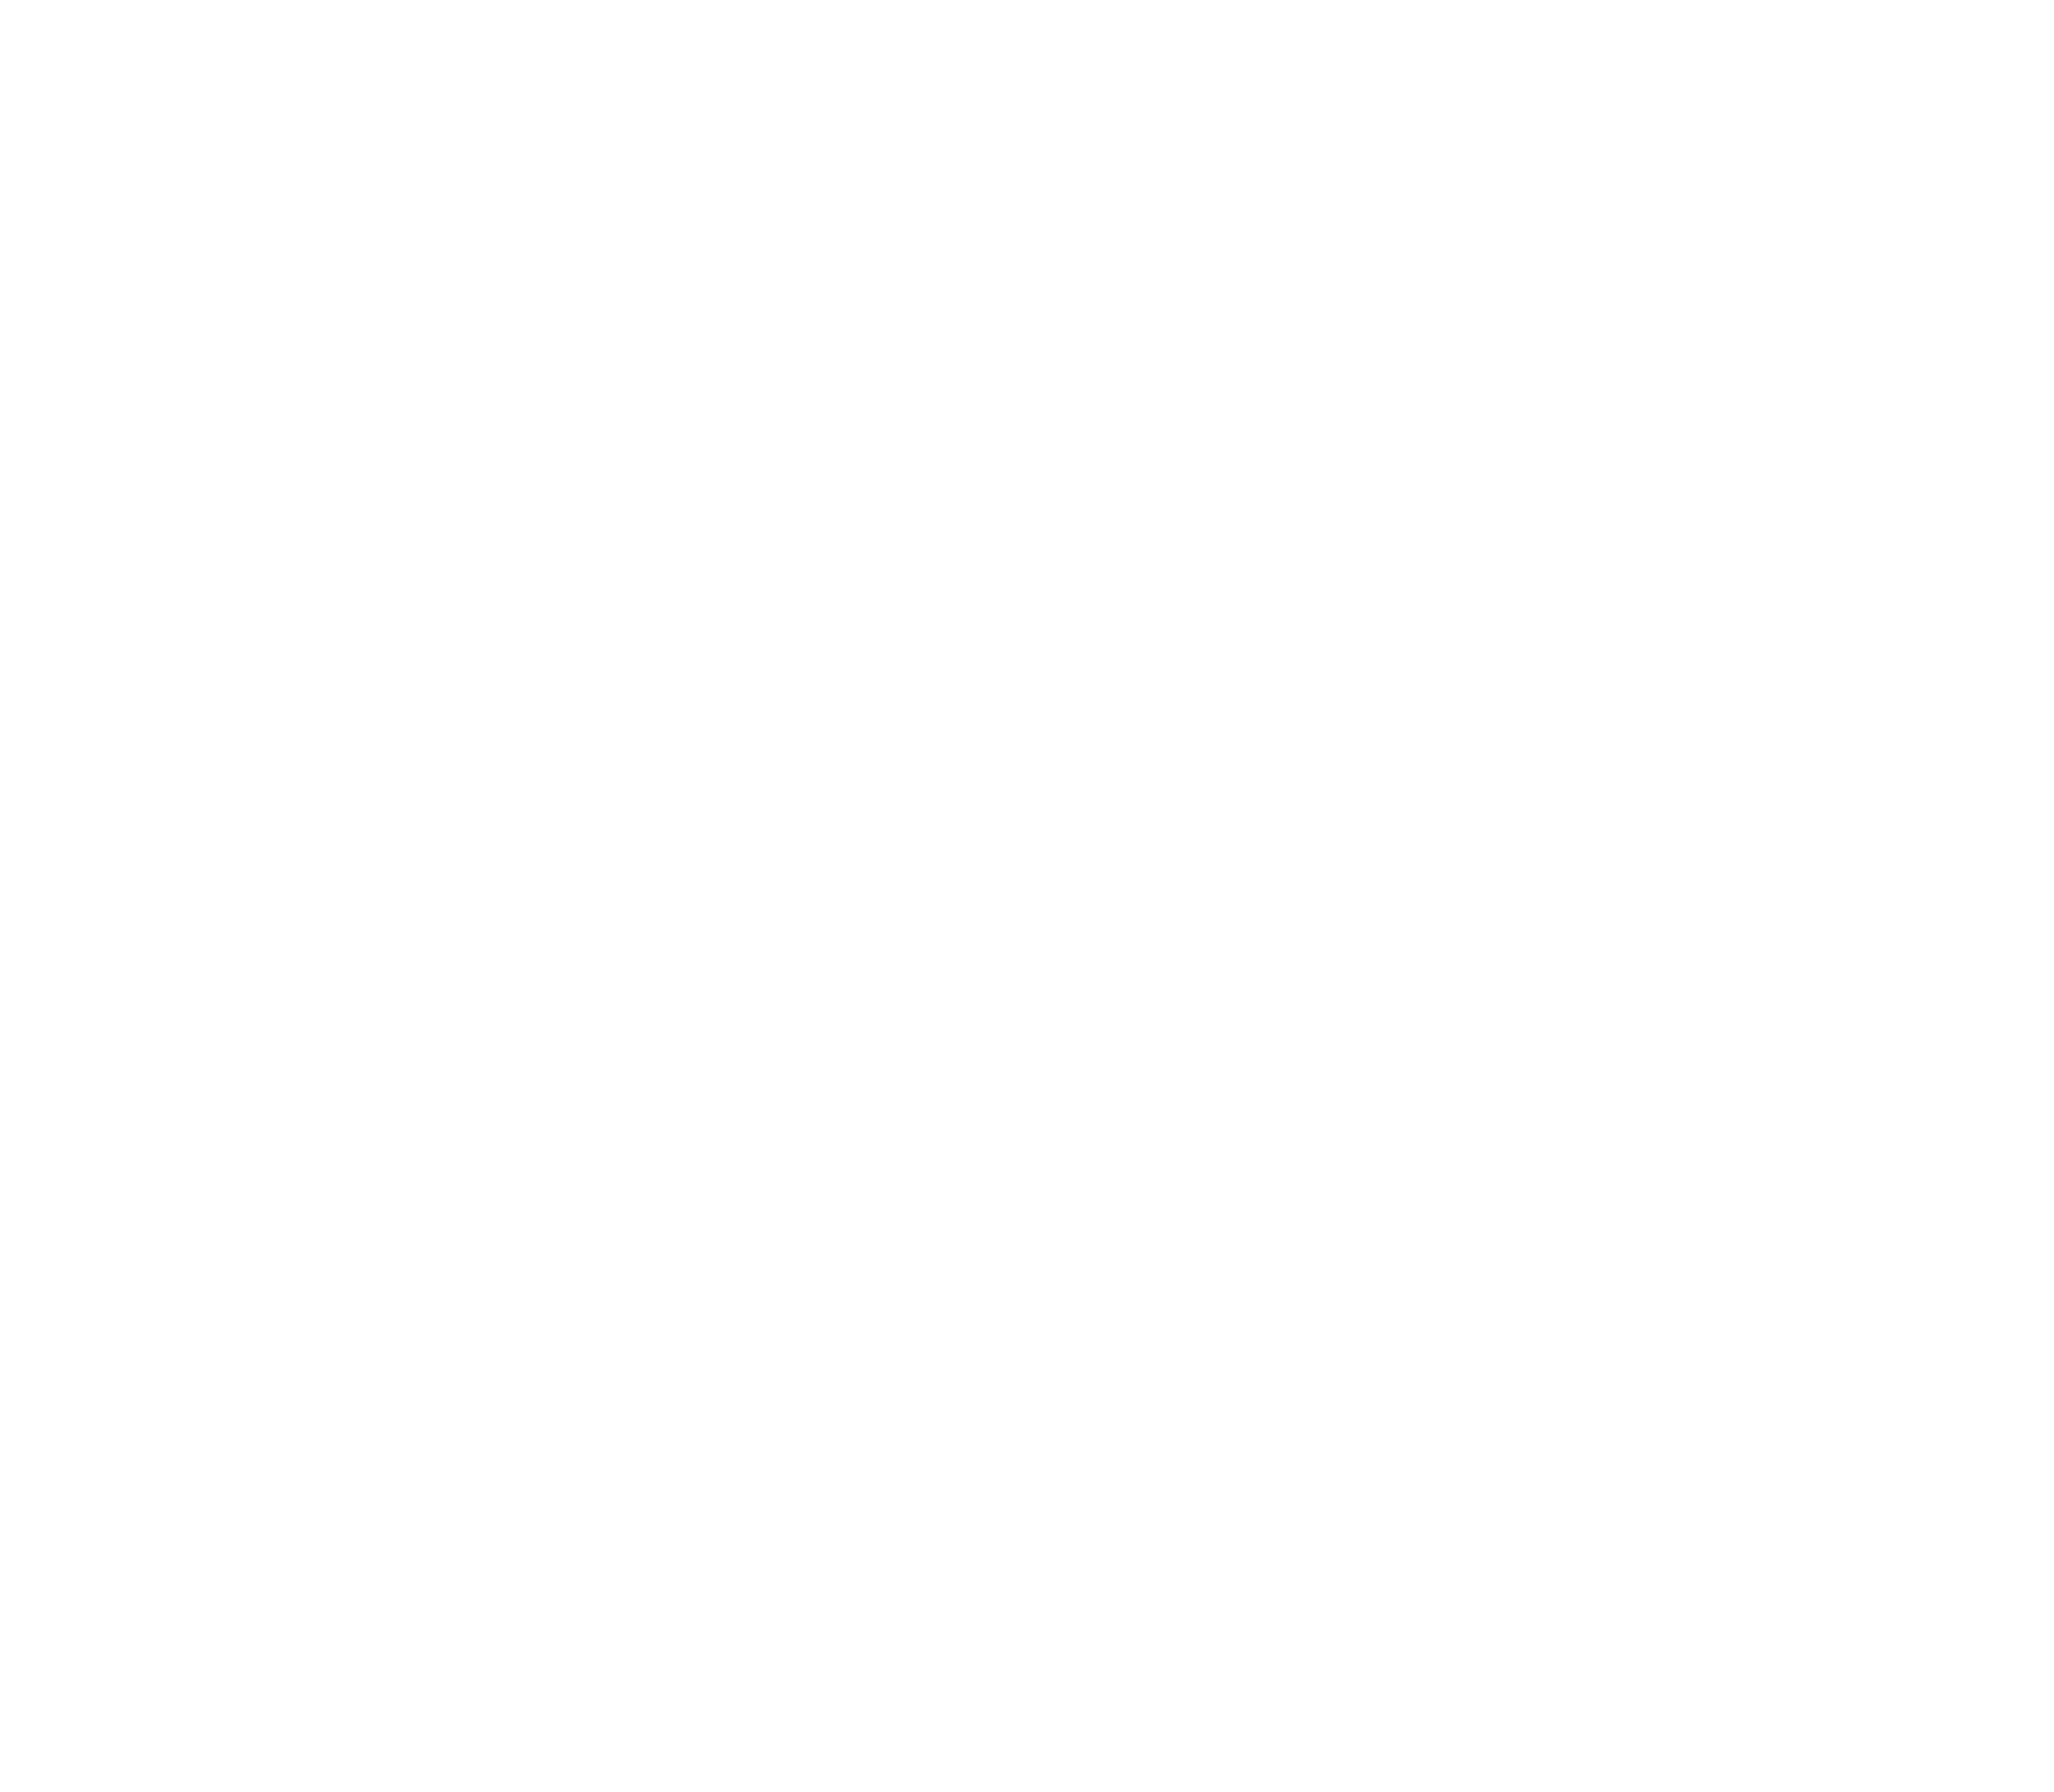 Wolk SOftware